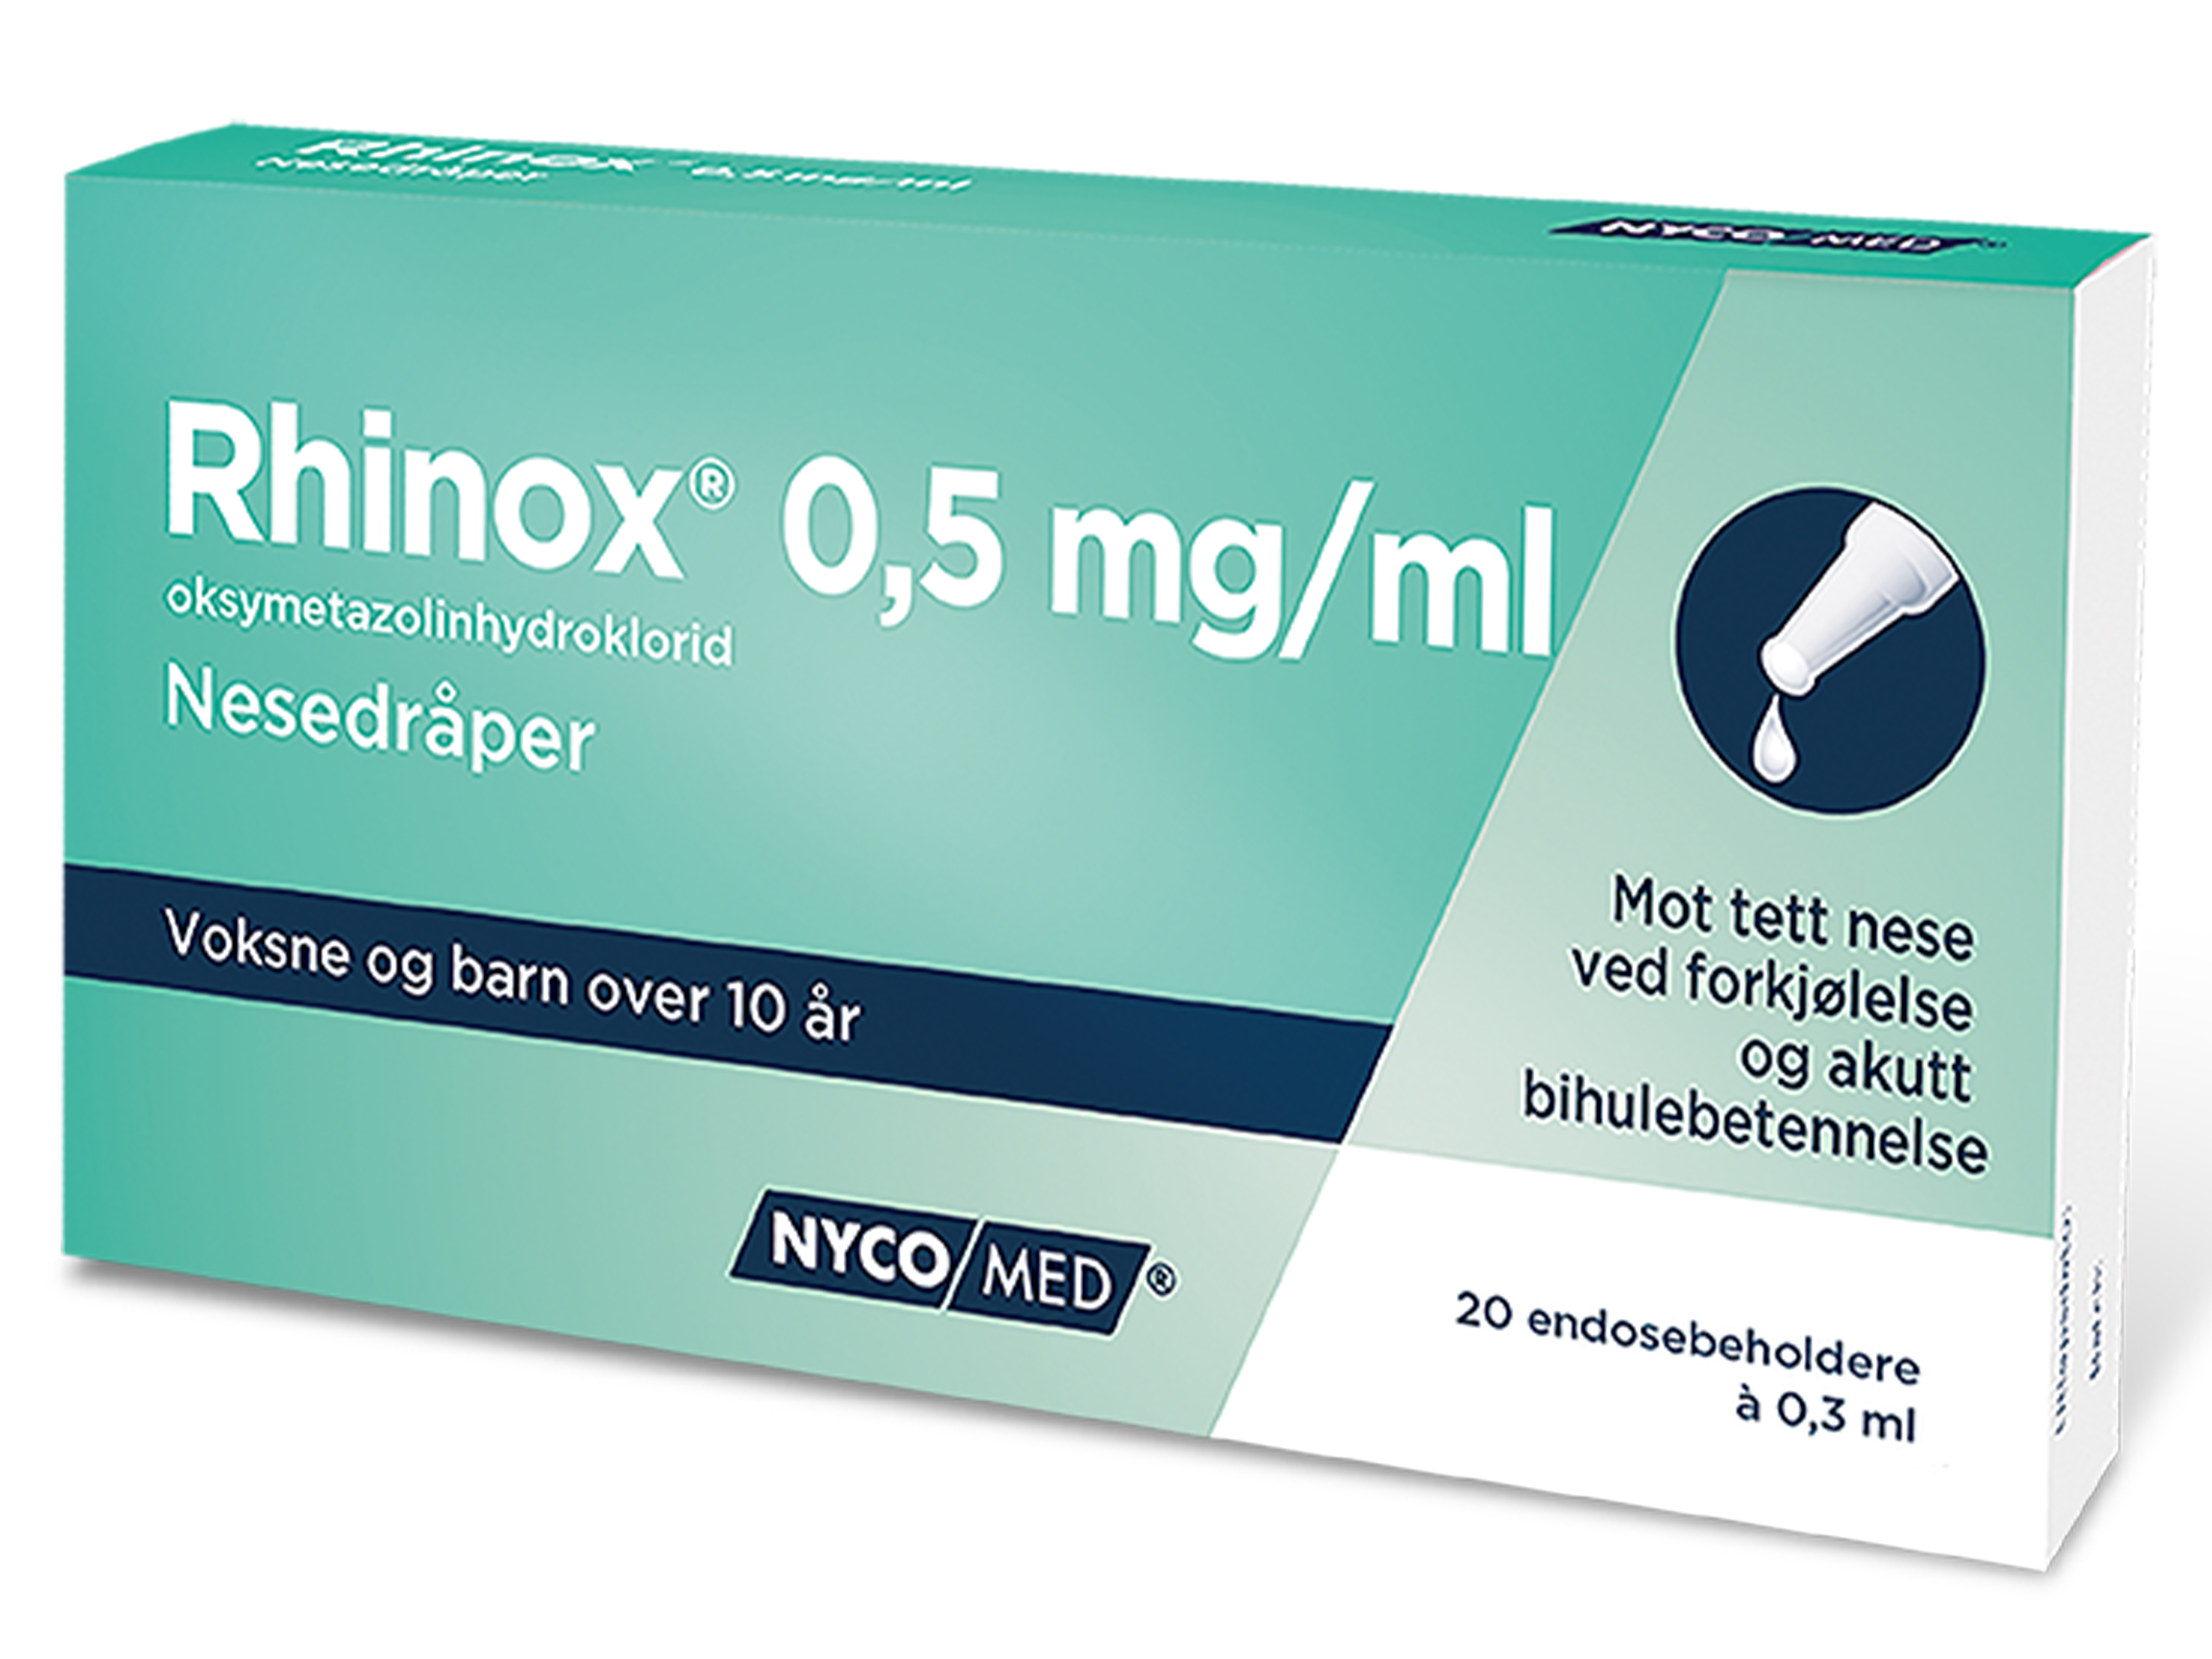 Rhinox Nesedråper 0,5mg/ml, 0,5 mg/ml til voksen, 20 endoser